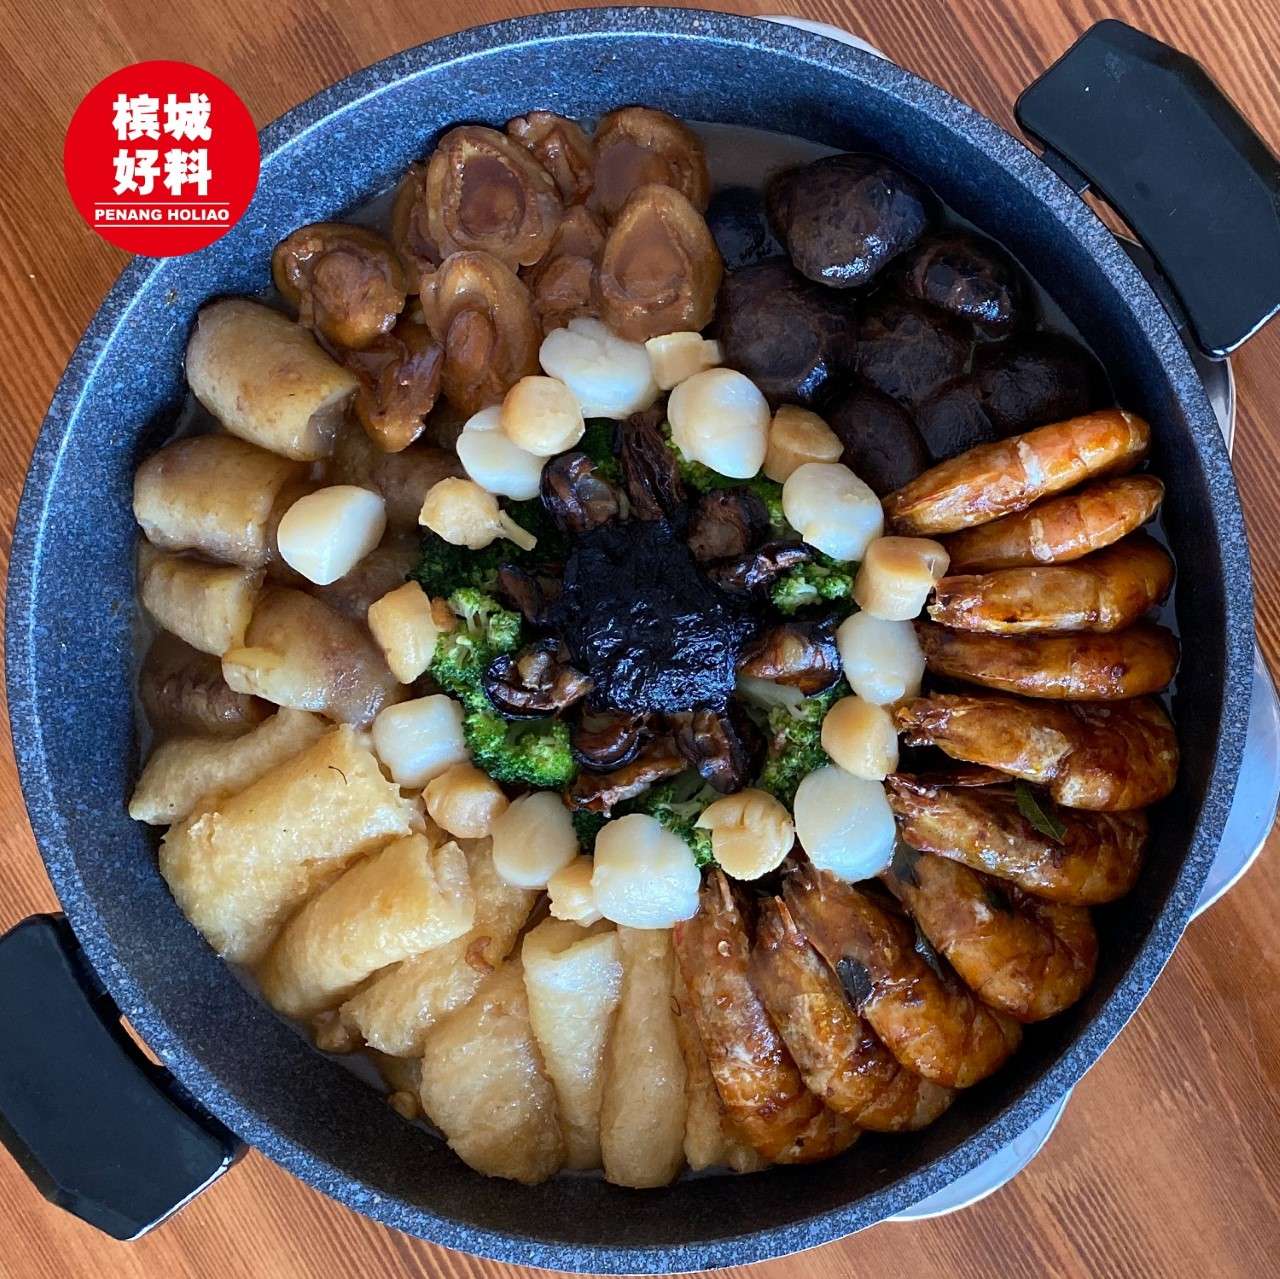 新春盆菜及套餐熱騰騰送到您家讓您們開心吃個團圓飯。